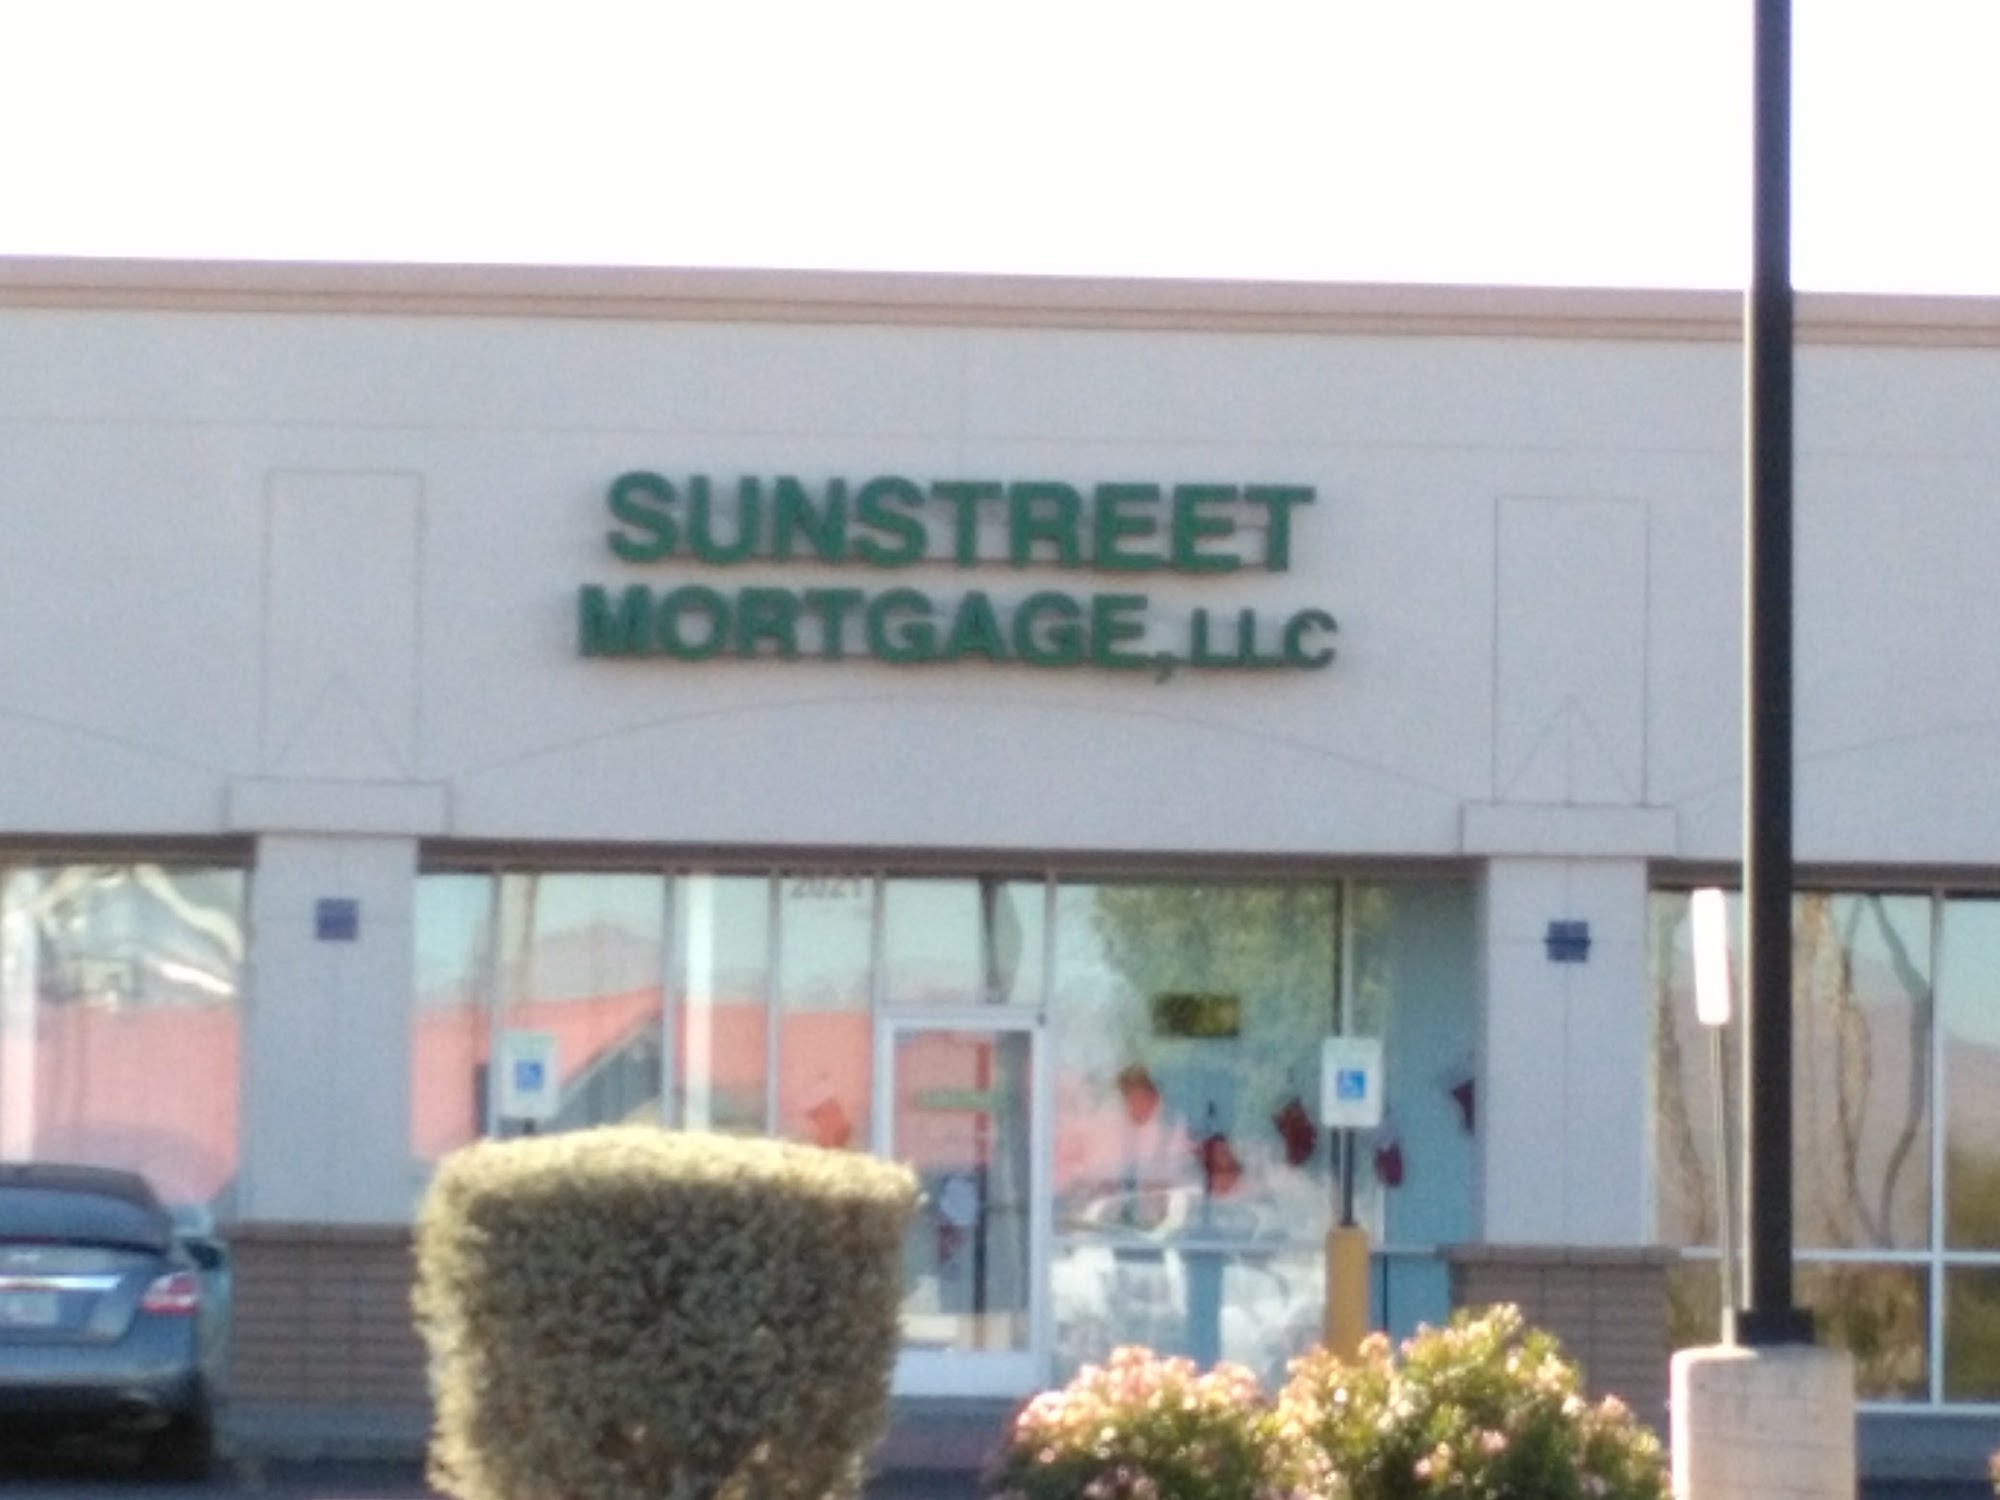 Sunstreet Mortgage, LLC - Thatcher 2021 W Thatcher Blvd Ste 109, Thatcher Arizona 85552